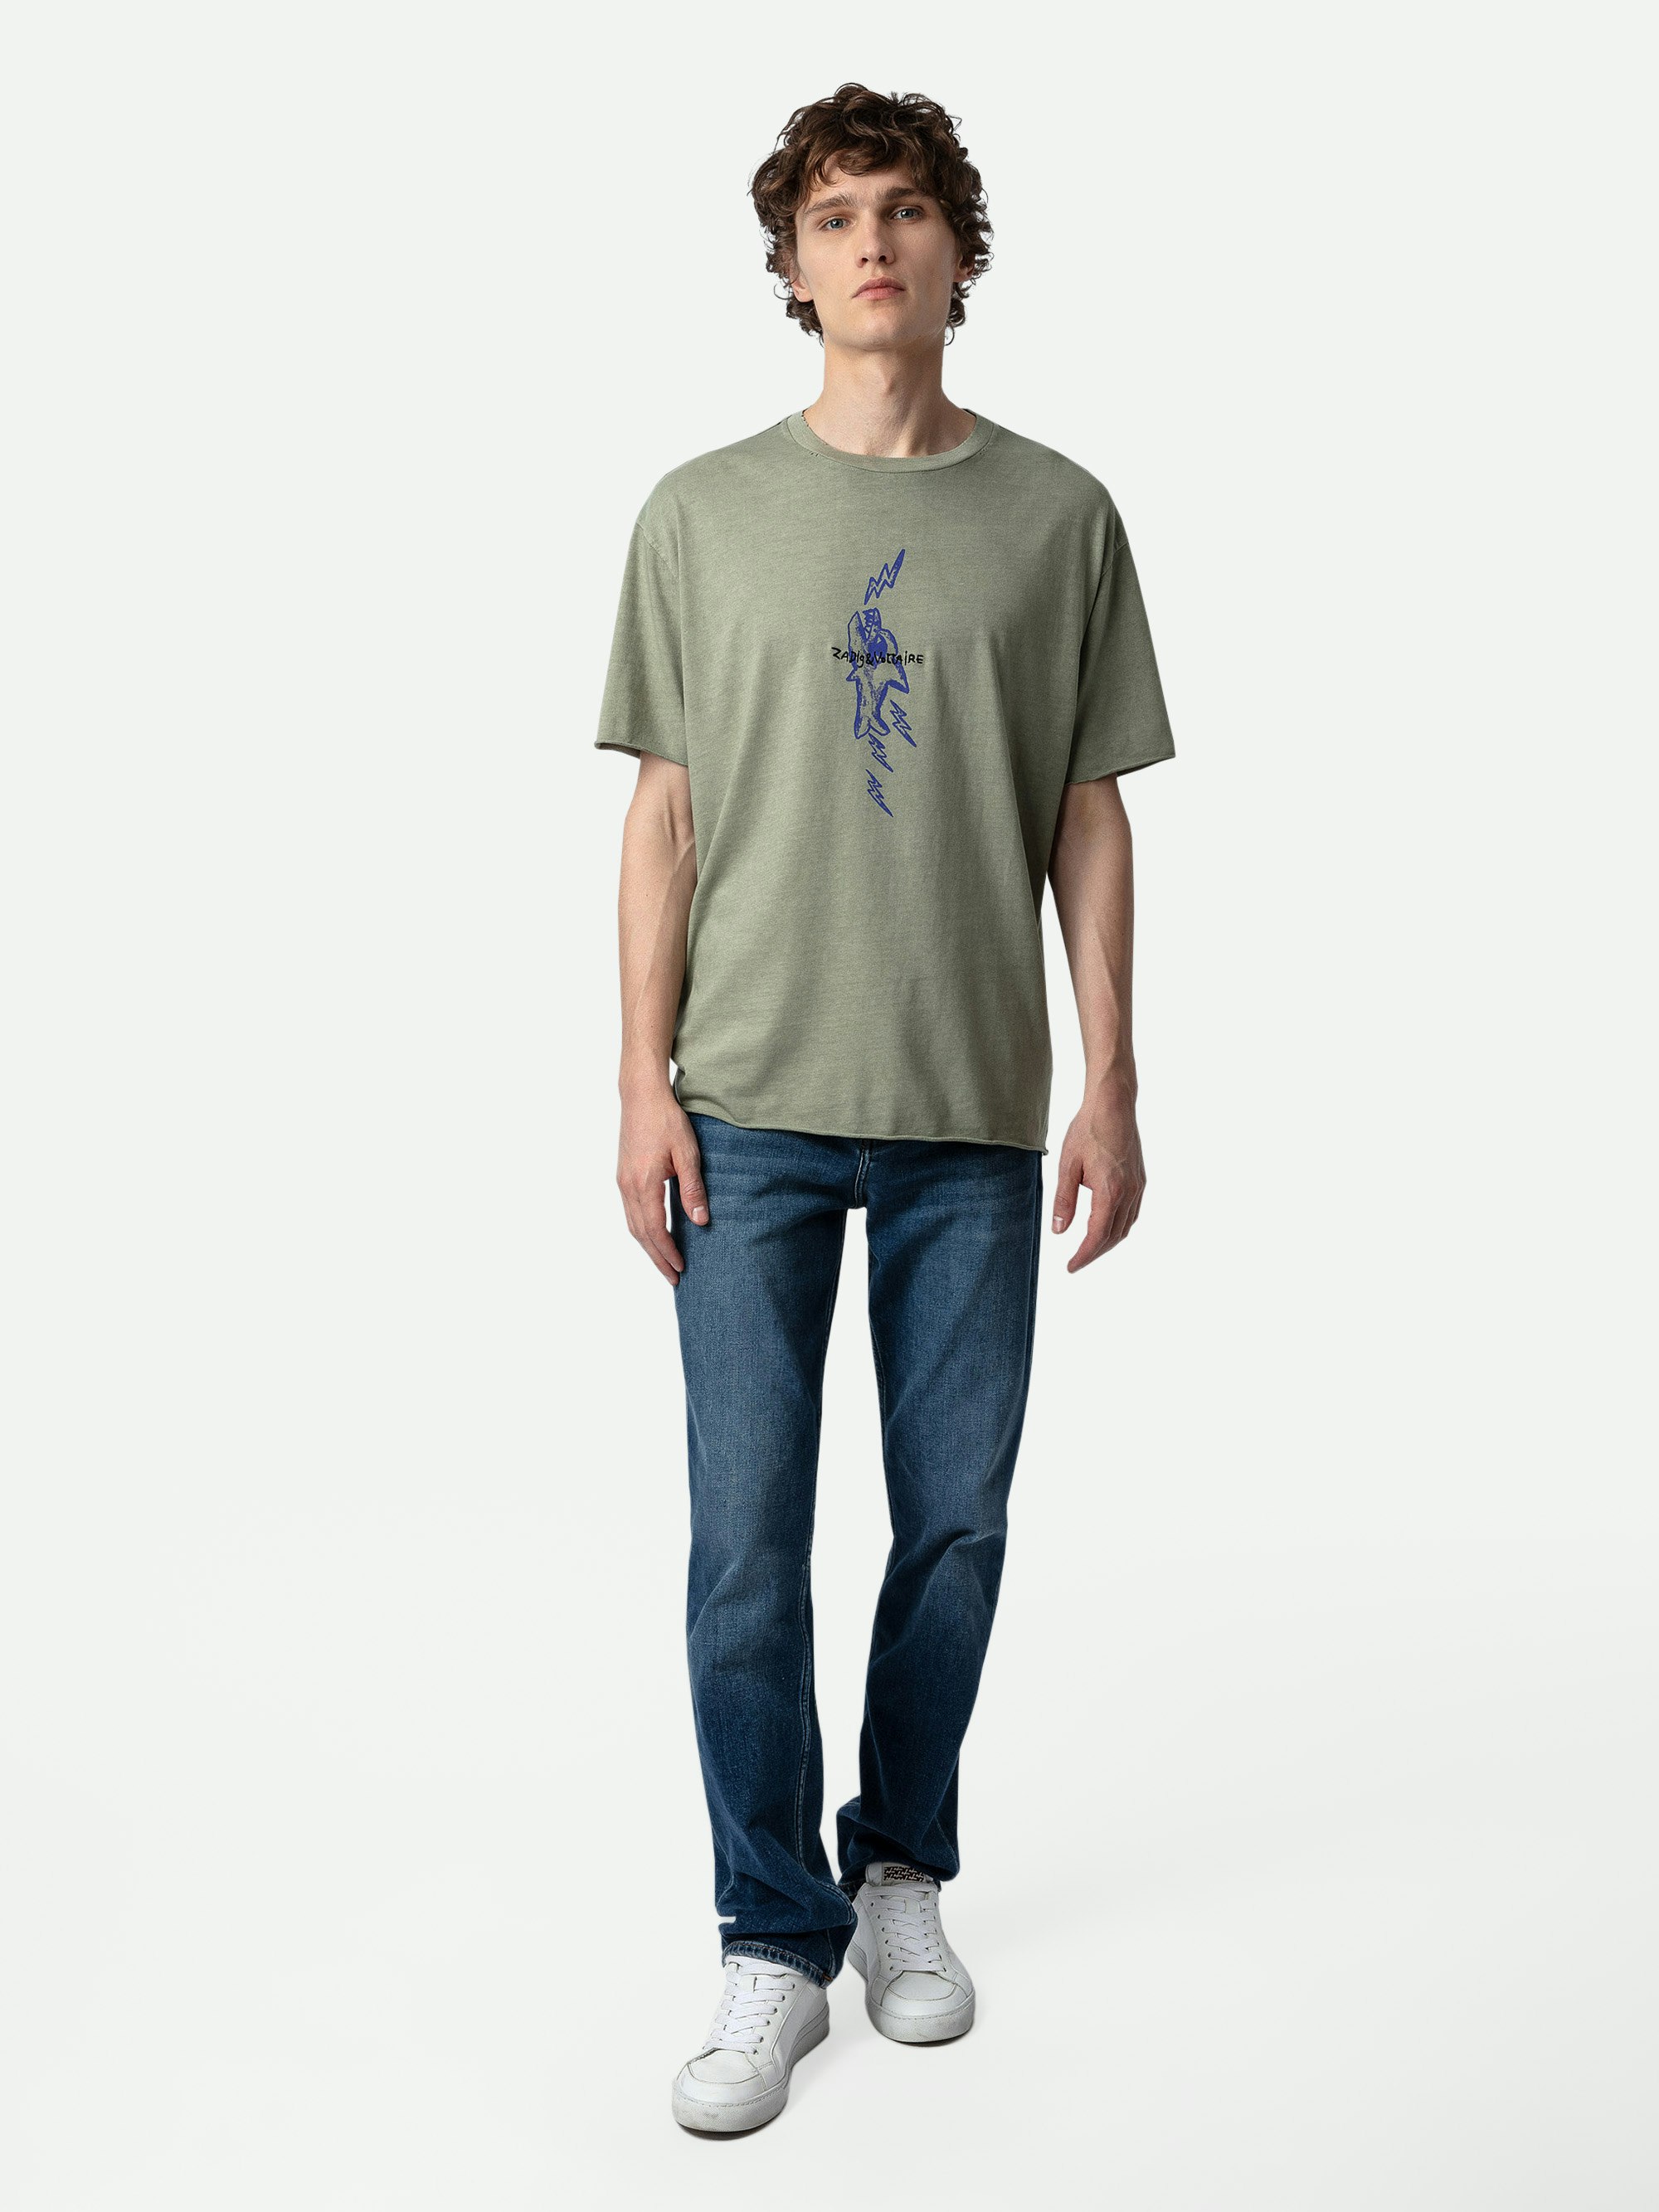 Camiseta Thilo - Camiseta gris de manga corta con efecto rasgado y estampado de tiburón.